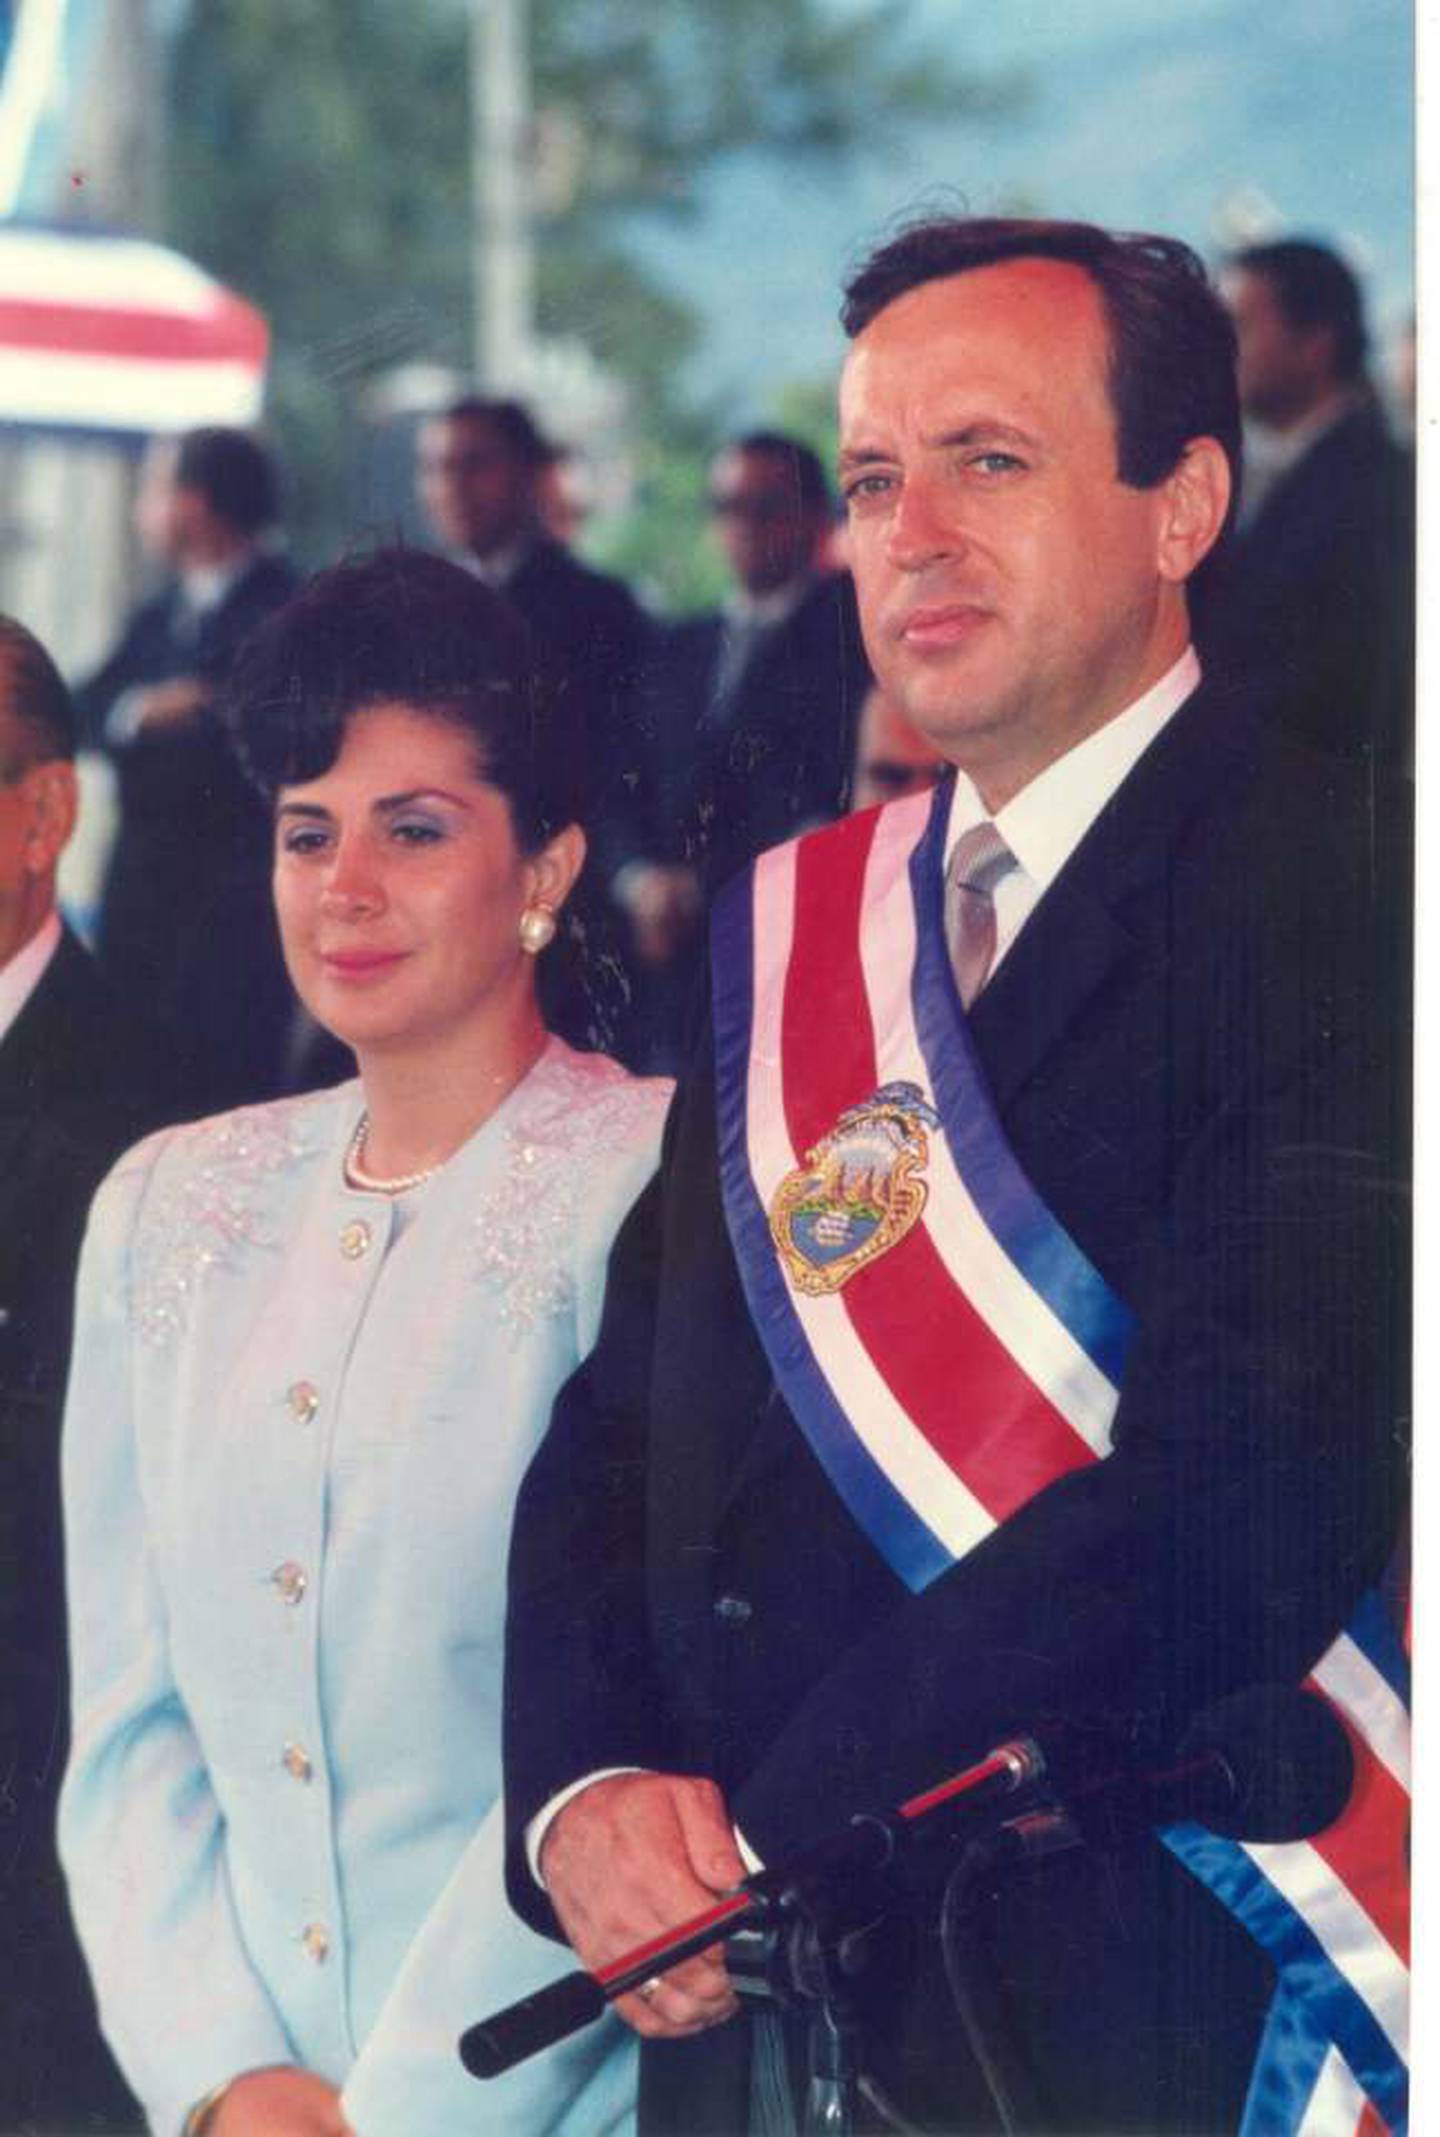 El presidente de Costa Rica entre 1990 y 1994, Rafael Ángel Calderón Fournier, y su esposa, la exprimera dama de la República, doña Gloria Bejarano Almada, cumplirán 52 años de matrimonio el próximo domingo 25 de febrero.